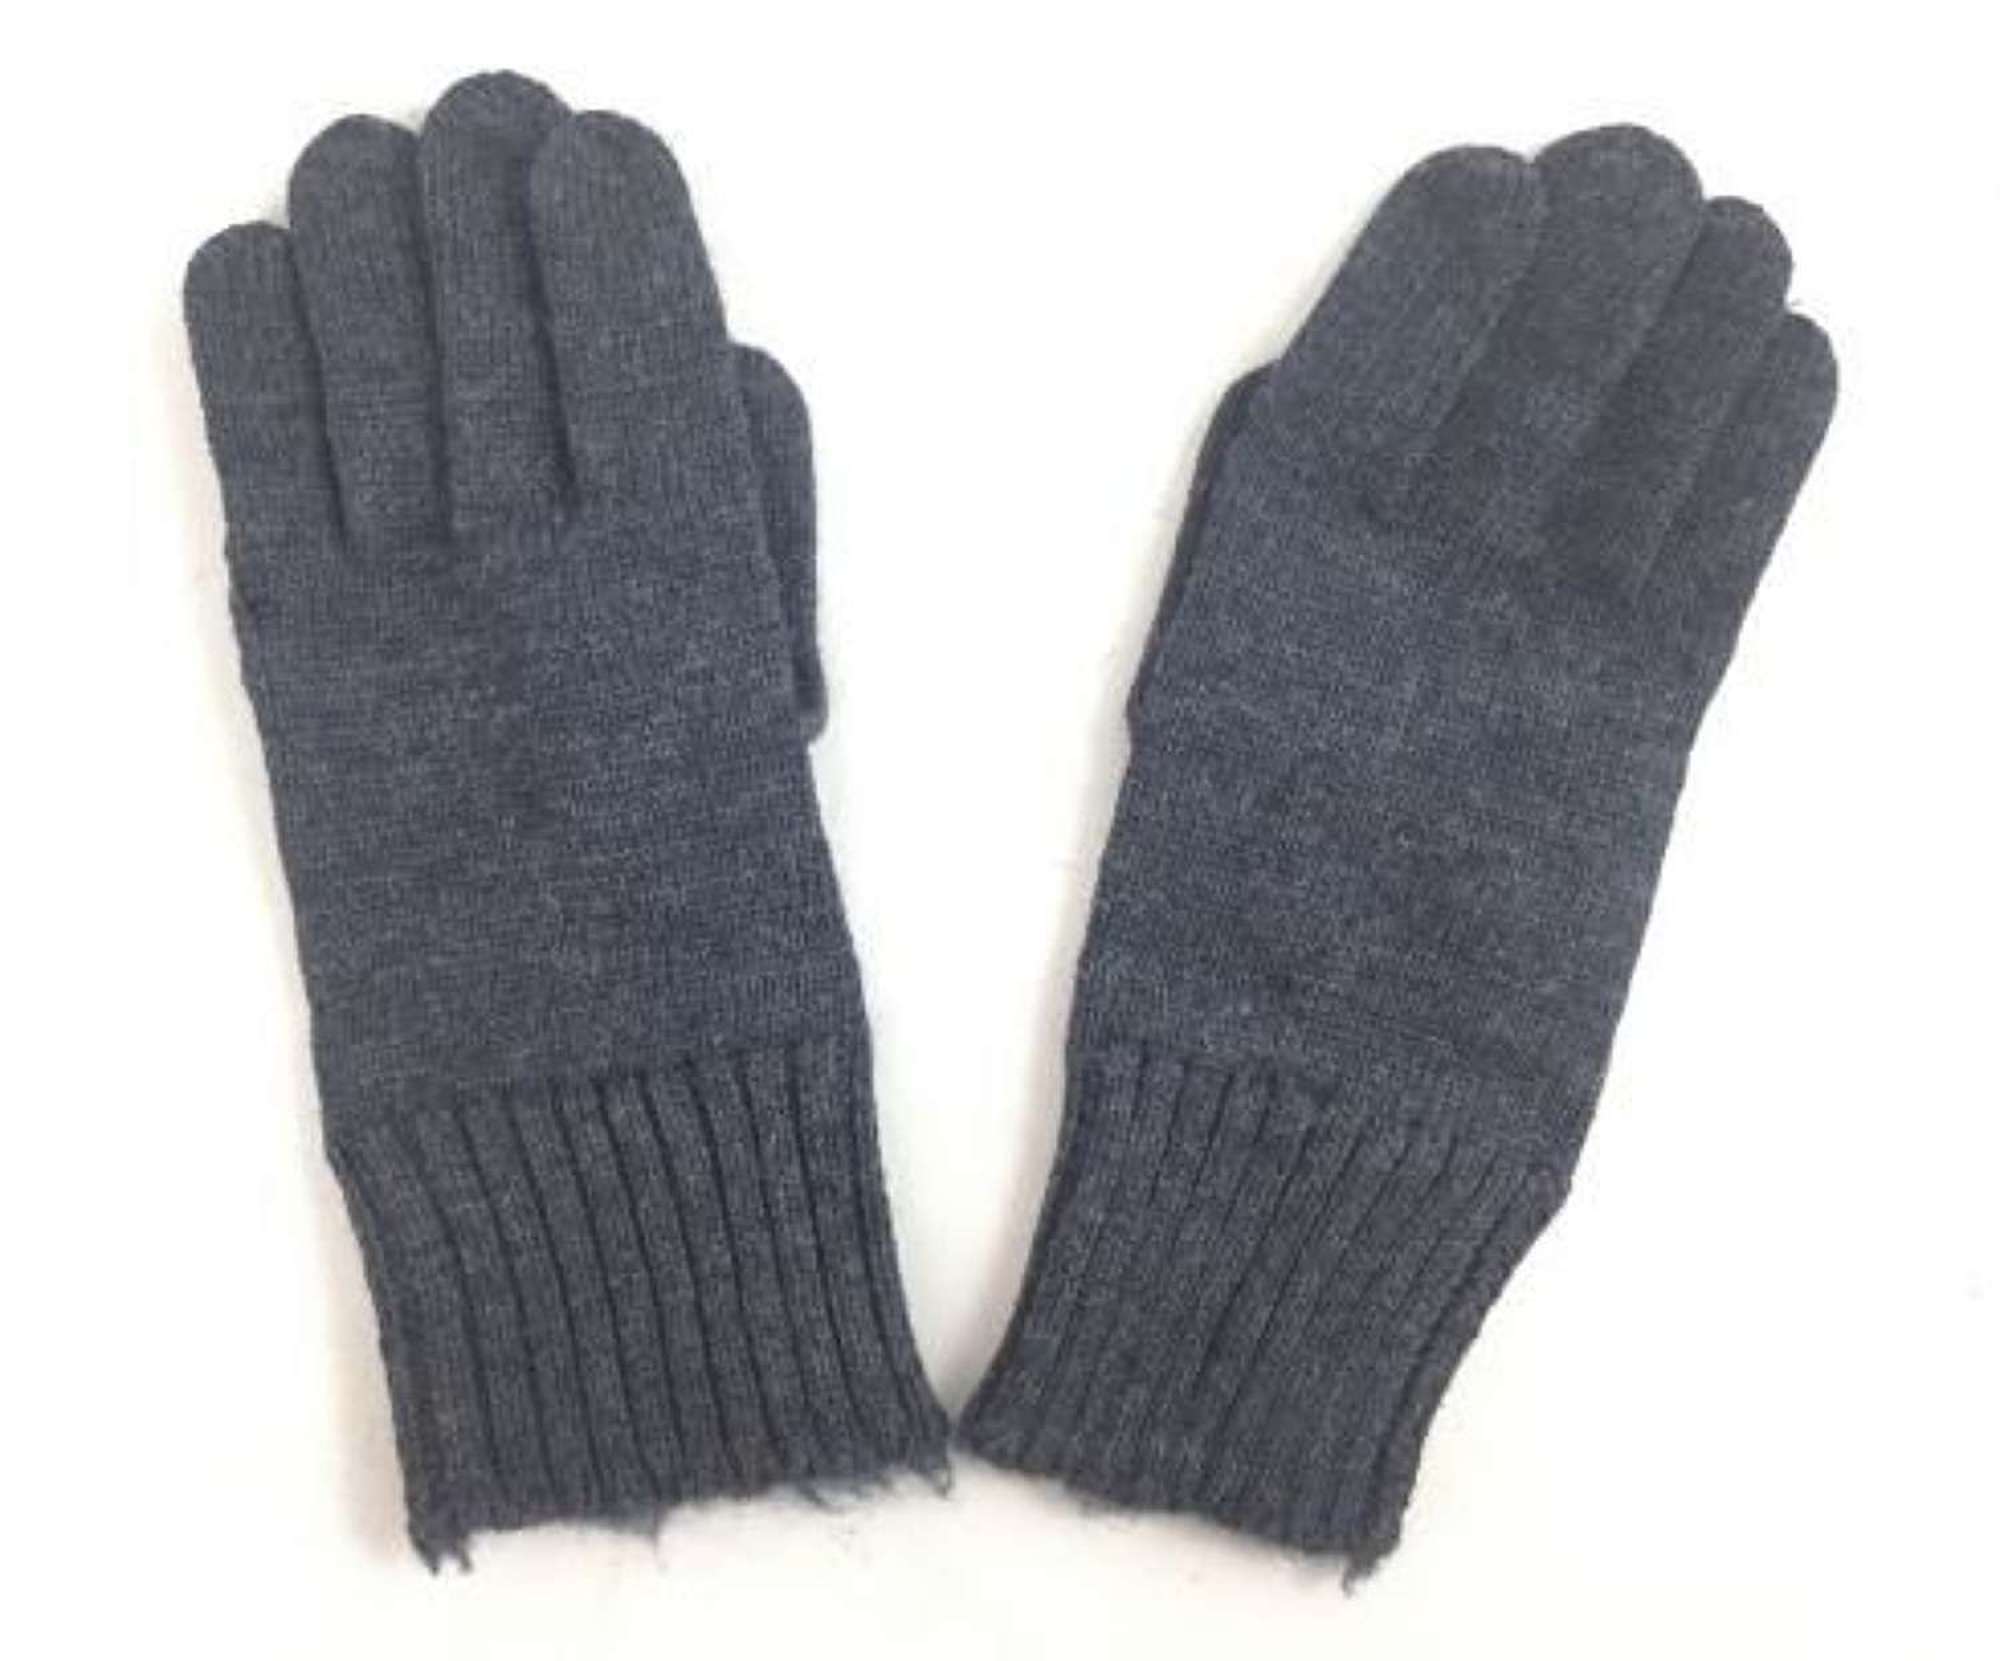 Original WW2 Period RAF Woolen Gloves